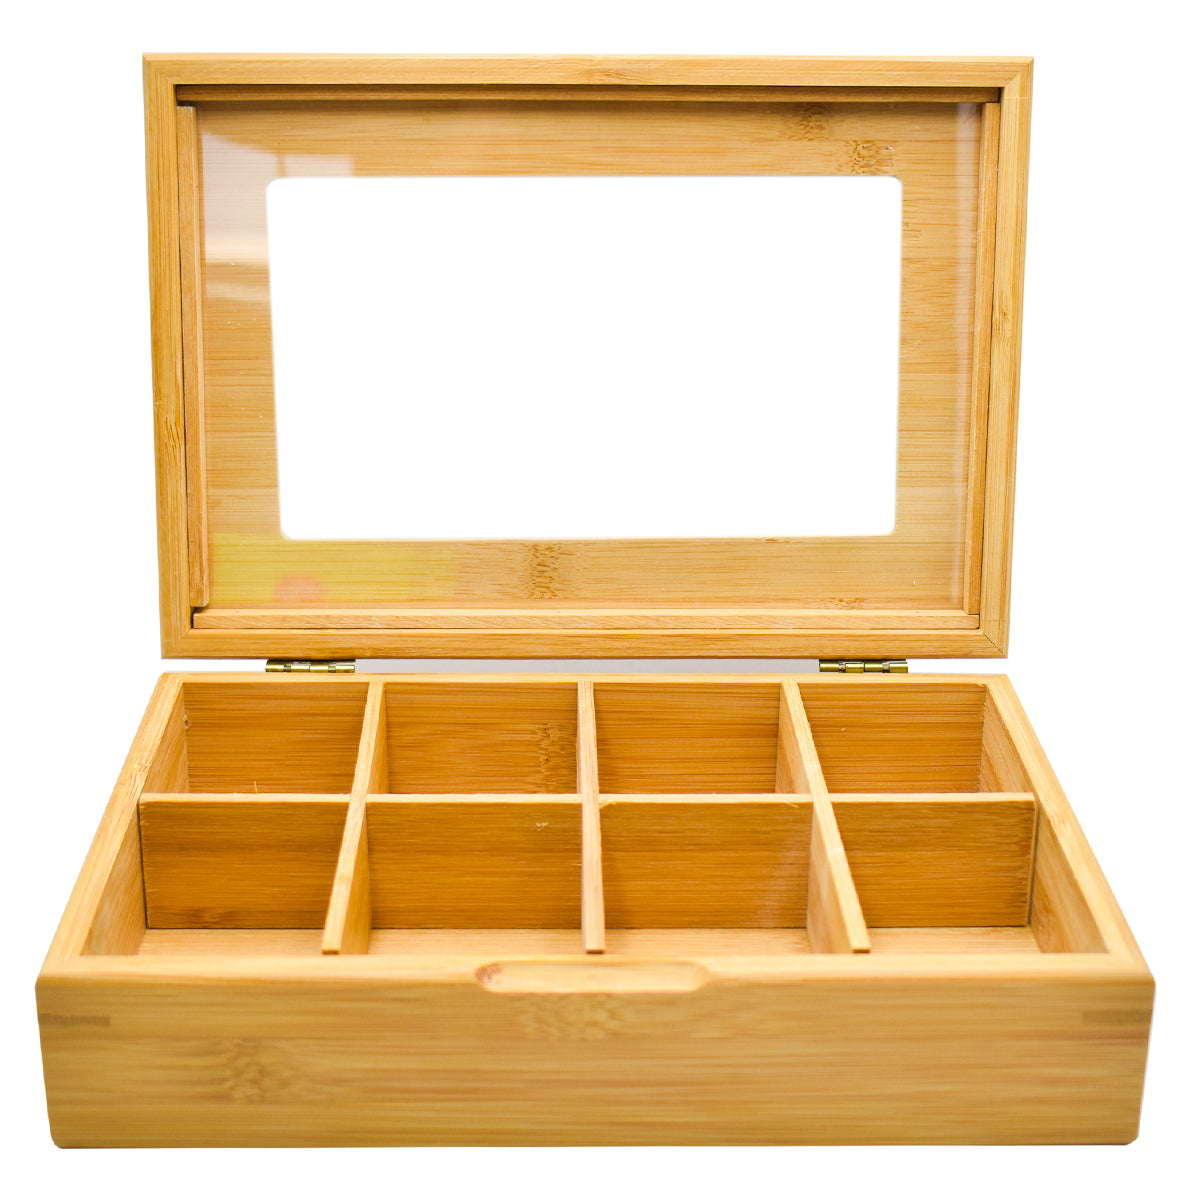 Prosumer's Choice Caja de almacenamiento de bambú – Caja de almacenamiento  de bambú para cocina, sala de estar, baño, oficina – Contenedor de arte y